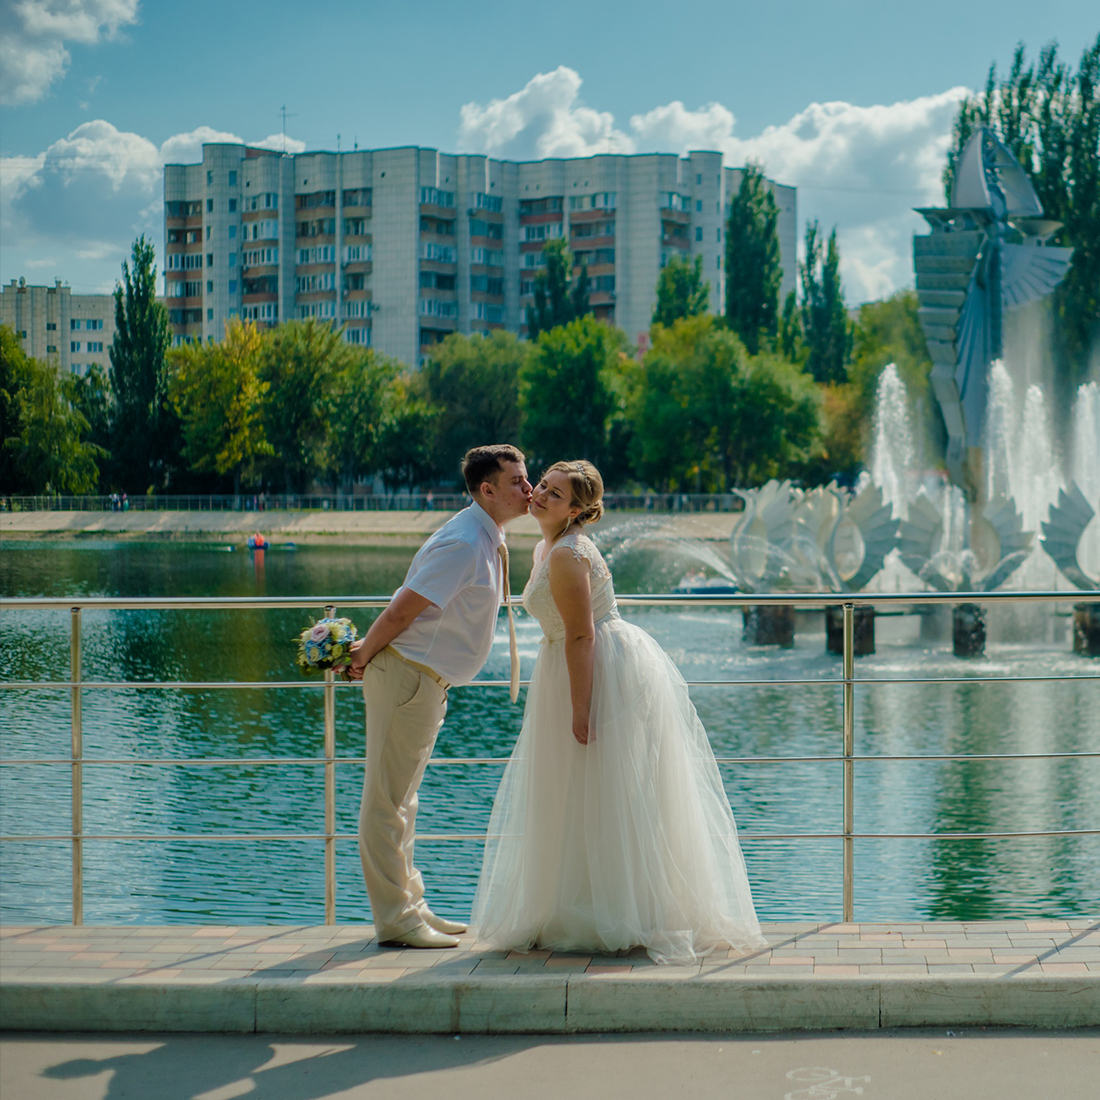 magic video photo городской пейзаж для свадьбы